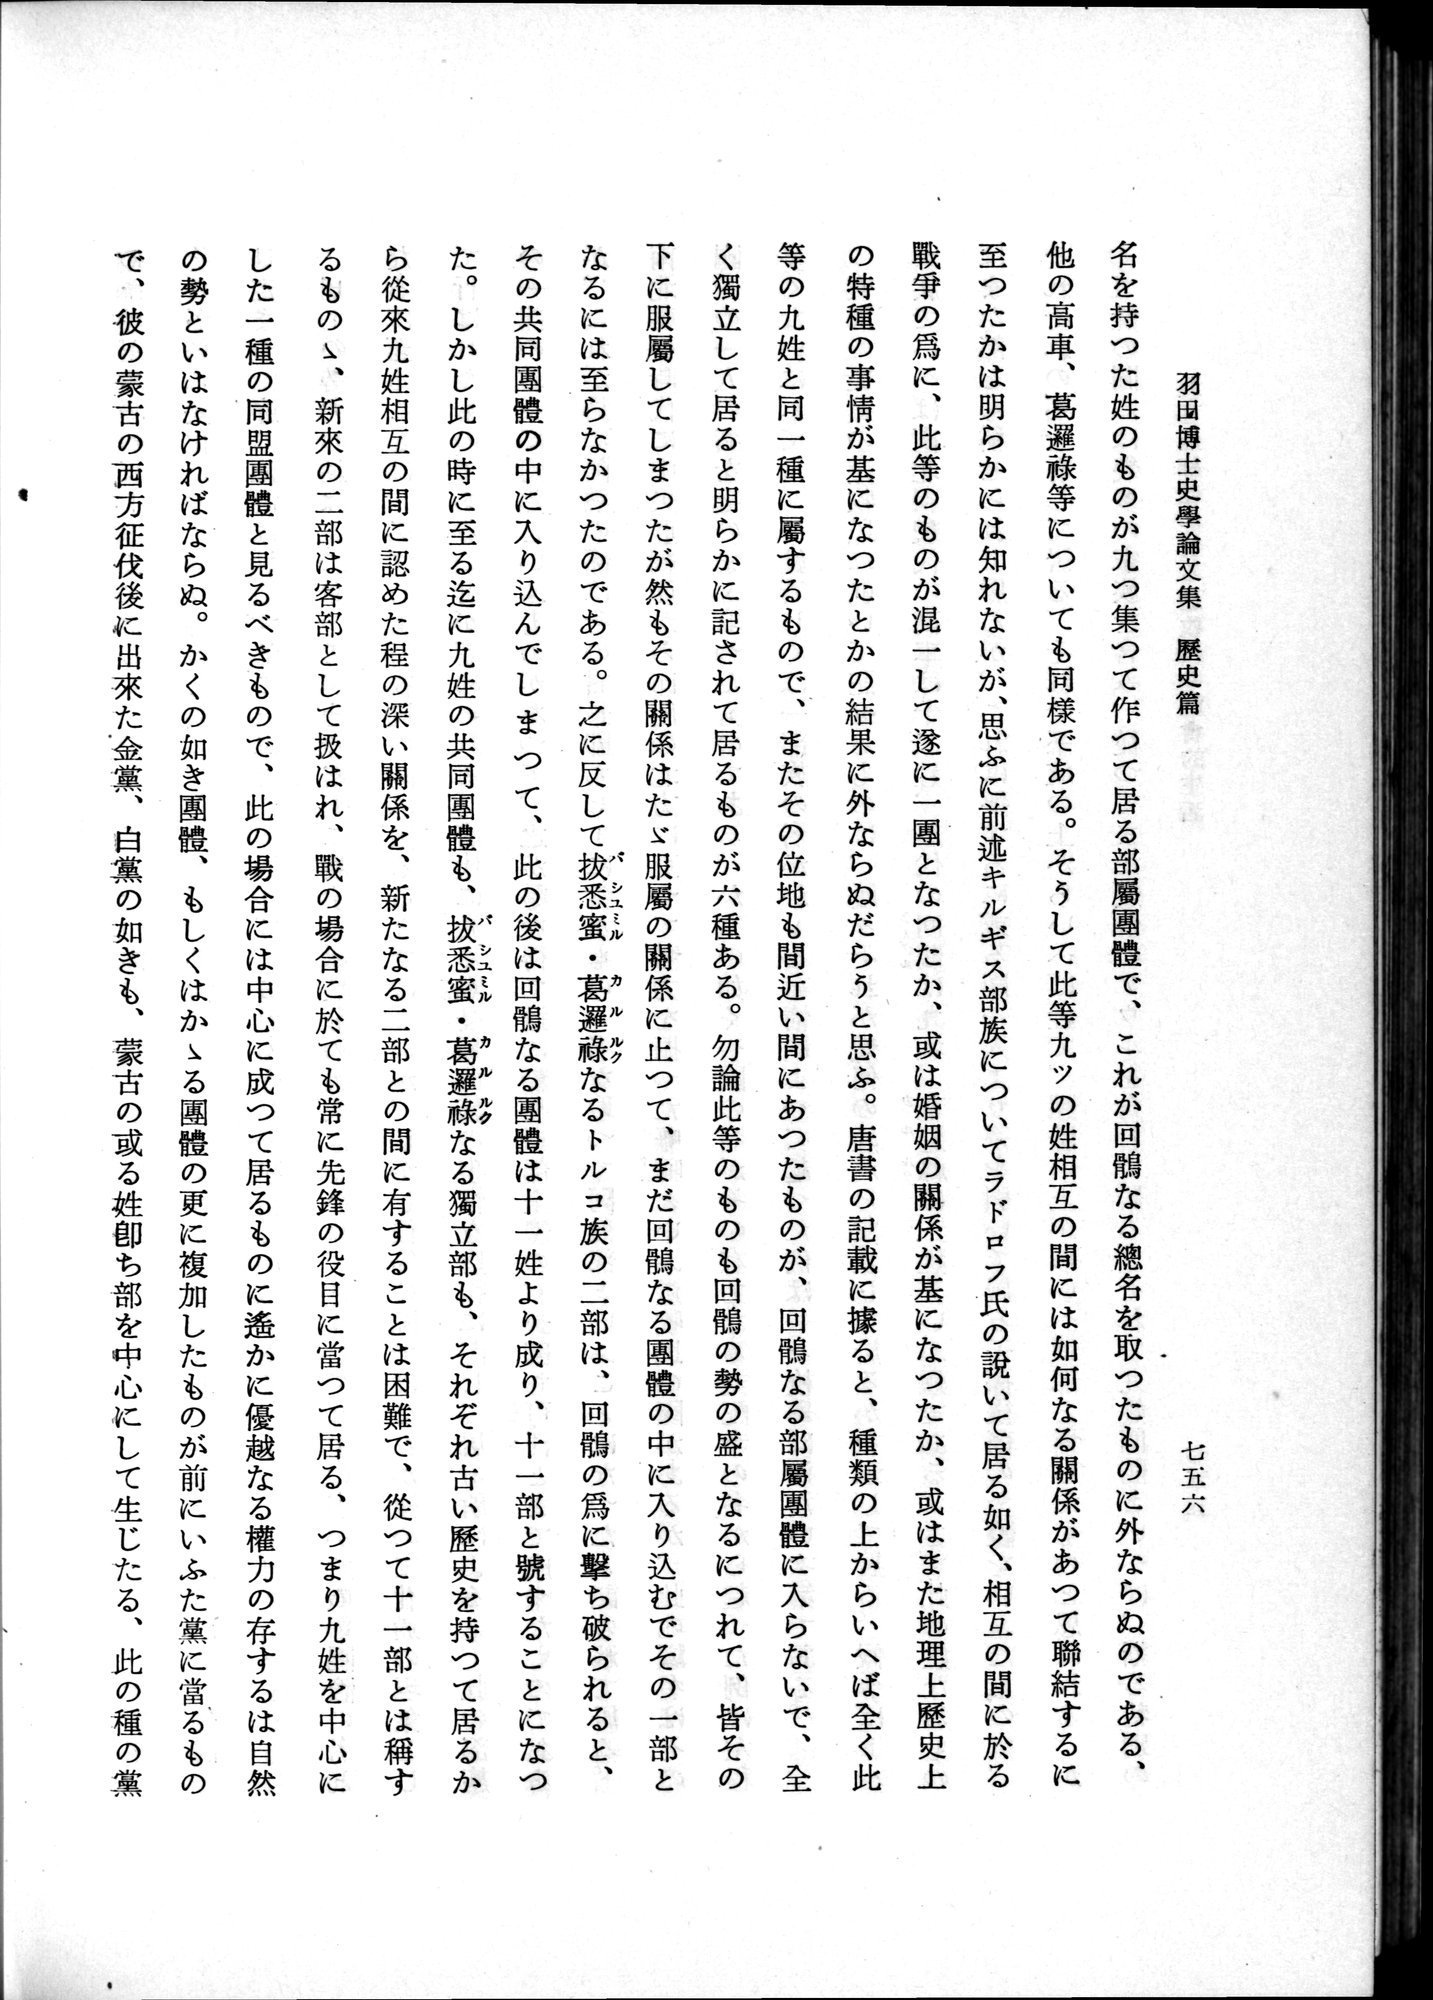 羽田博士史学論文集 : vol.1 / Page 794 (Grayscale High Resolution Image)